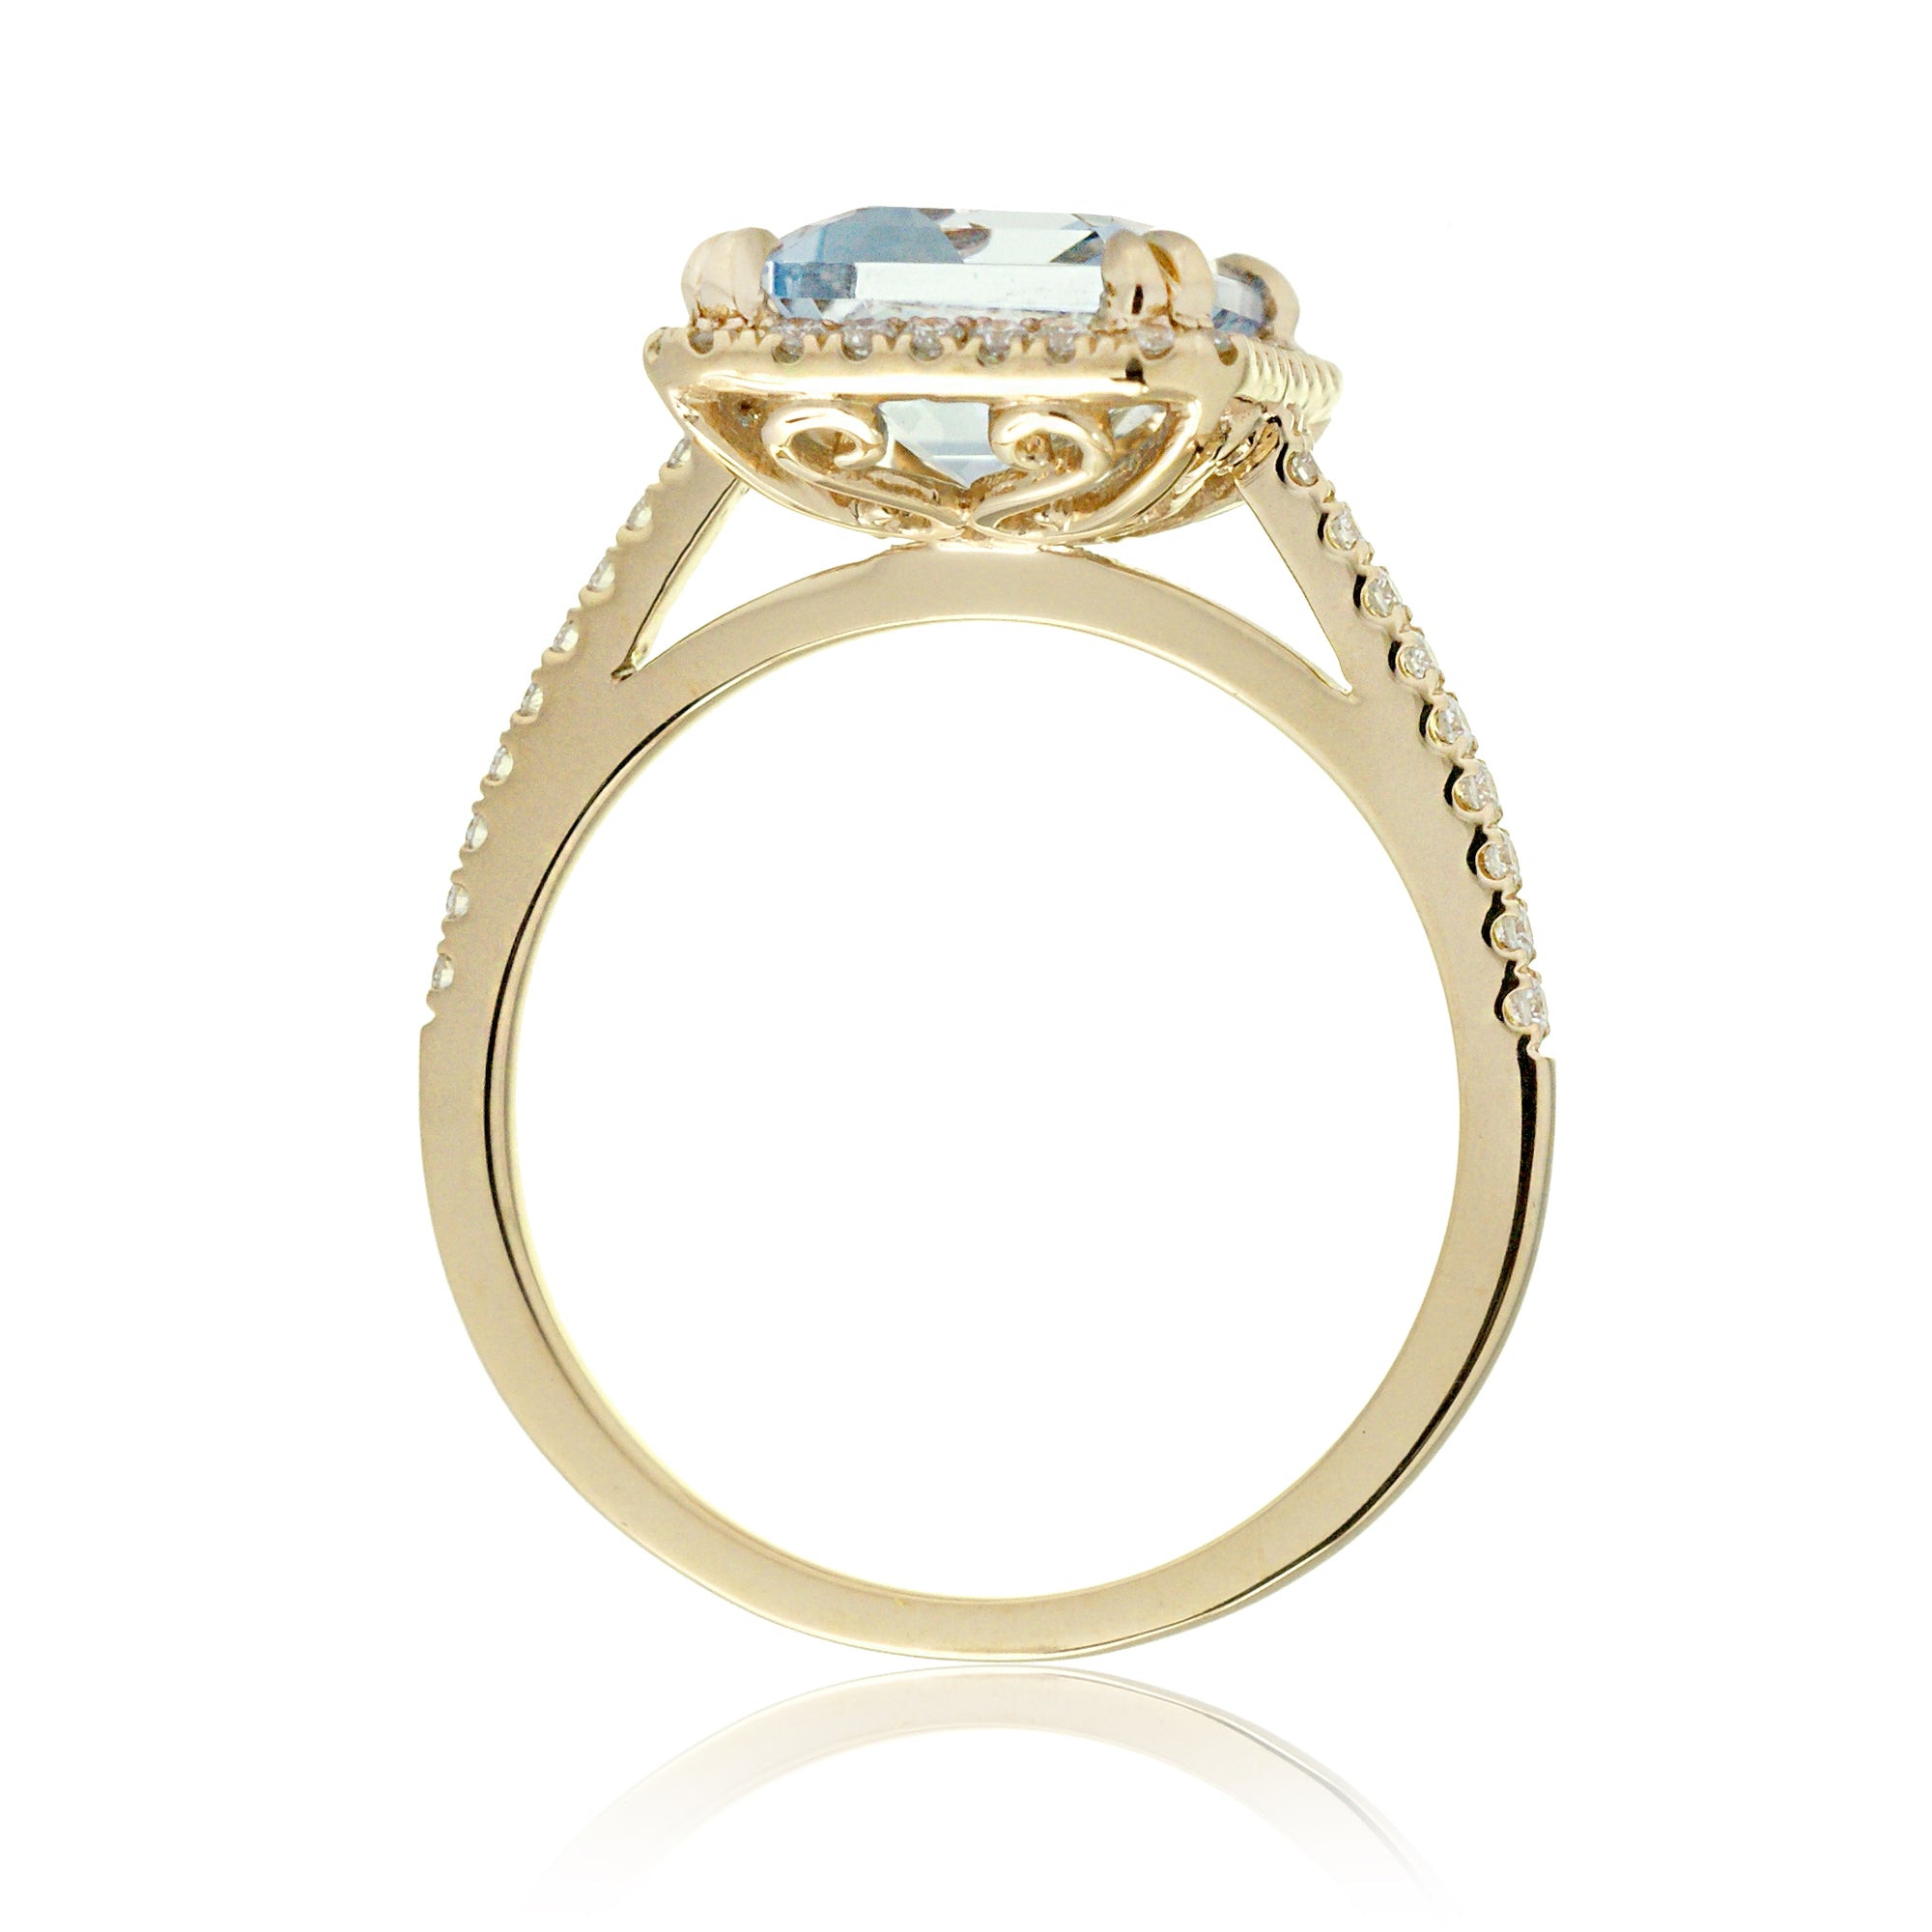 The Signature Emerald Cut Aquamarine Ring